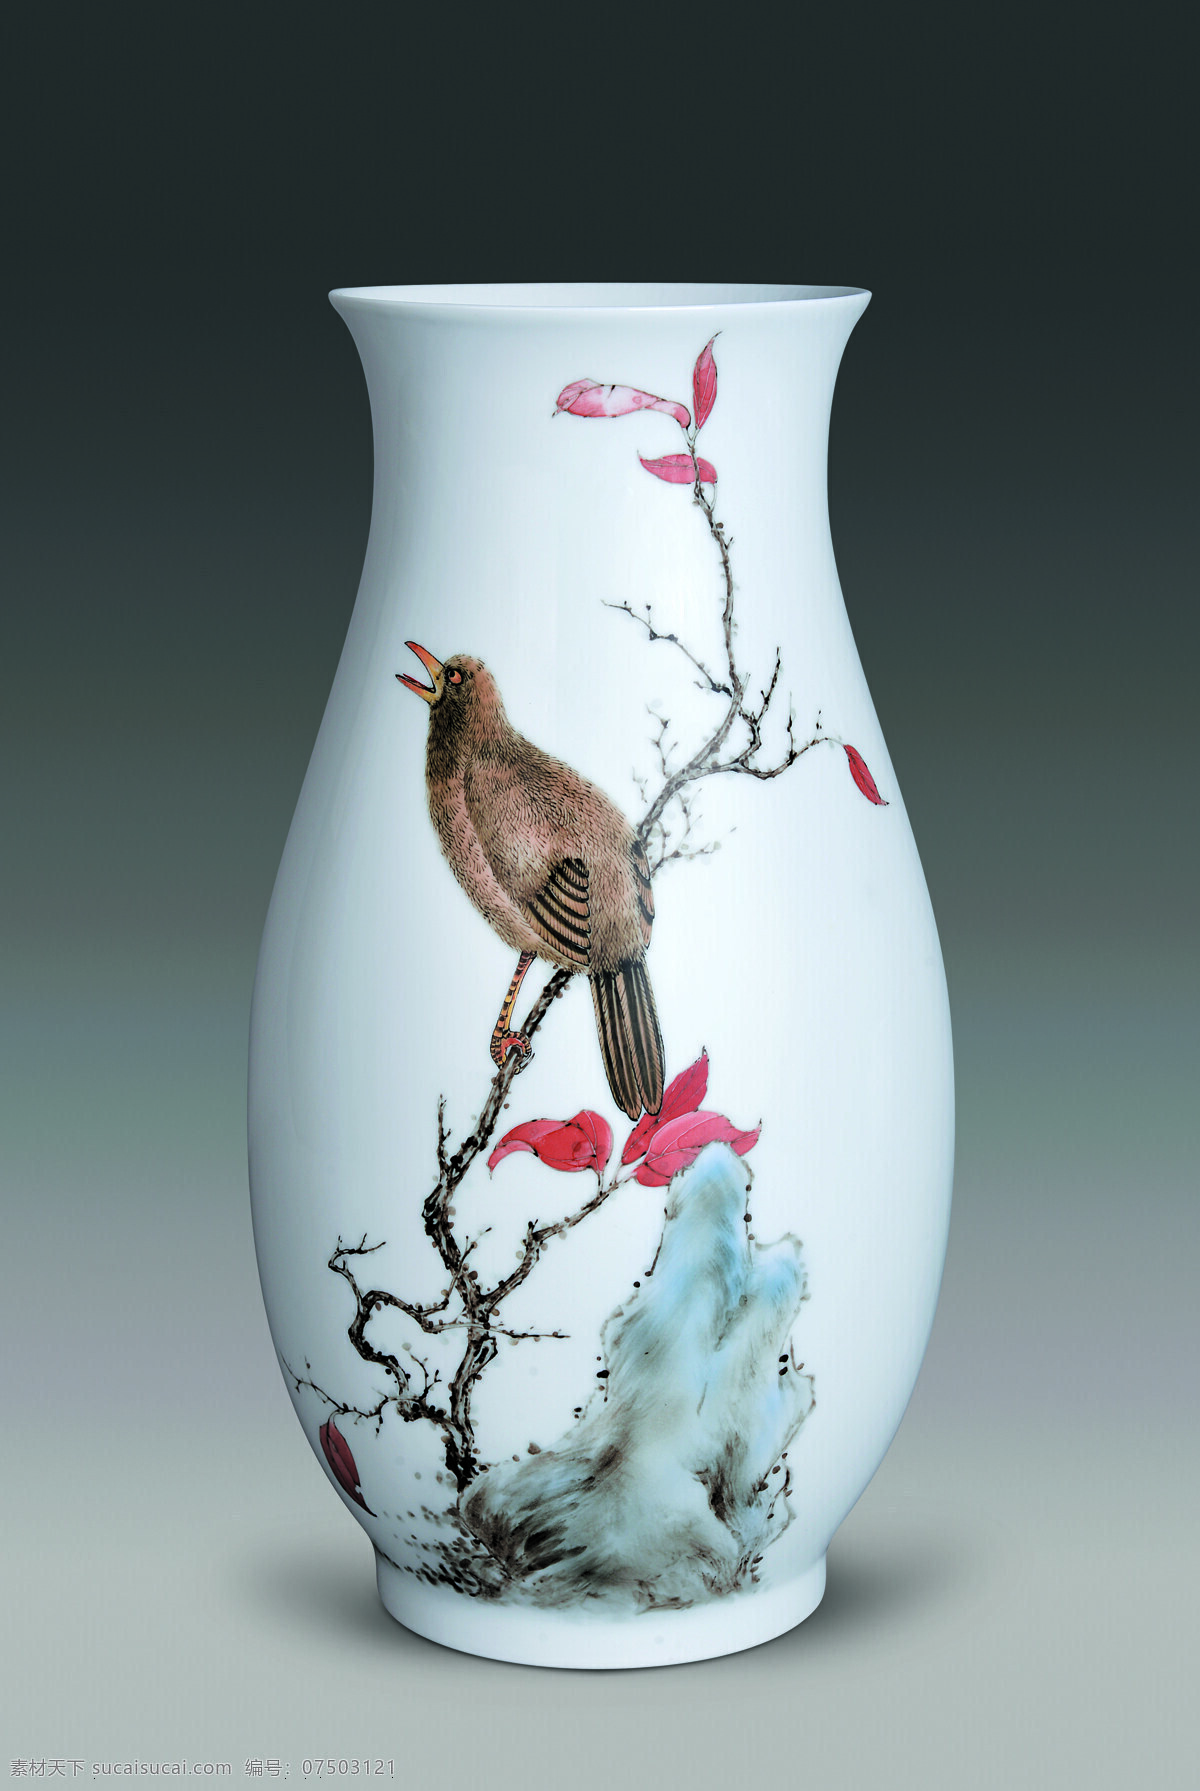 瓷器花瓶 醴陵 陶瓷 瓷器 画眉 鸟 杜鹃 喜鹊 山水 画 花瓶 大圆口 美术绘画 文化艺术